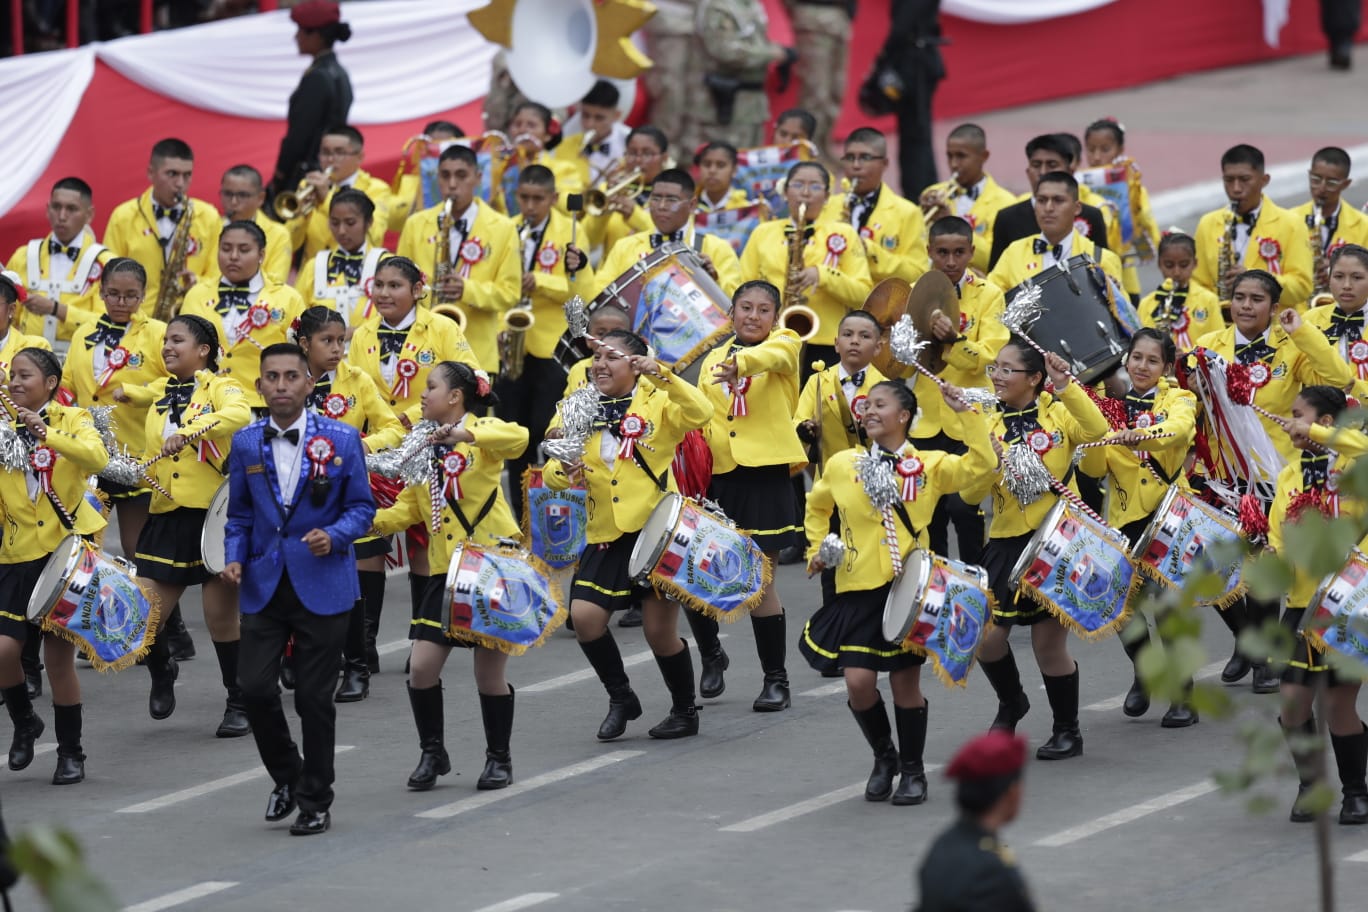 (7) VIRALES. Banda del colegio Manuel González Prada de Huaycán (Ate) que alcanzó popularidad en TikTok fue invitada al desfile.